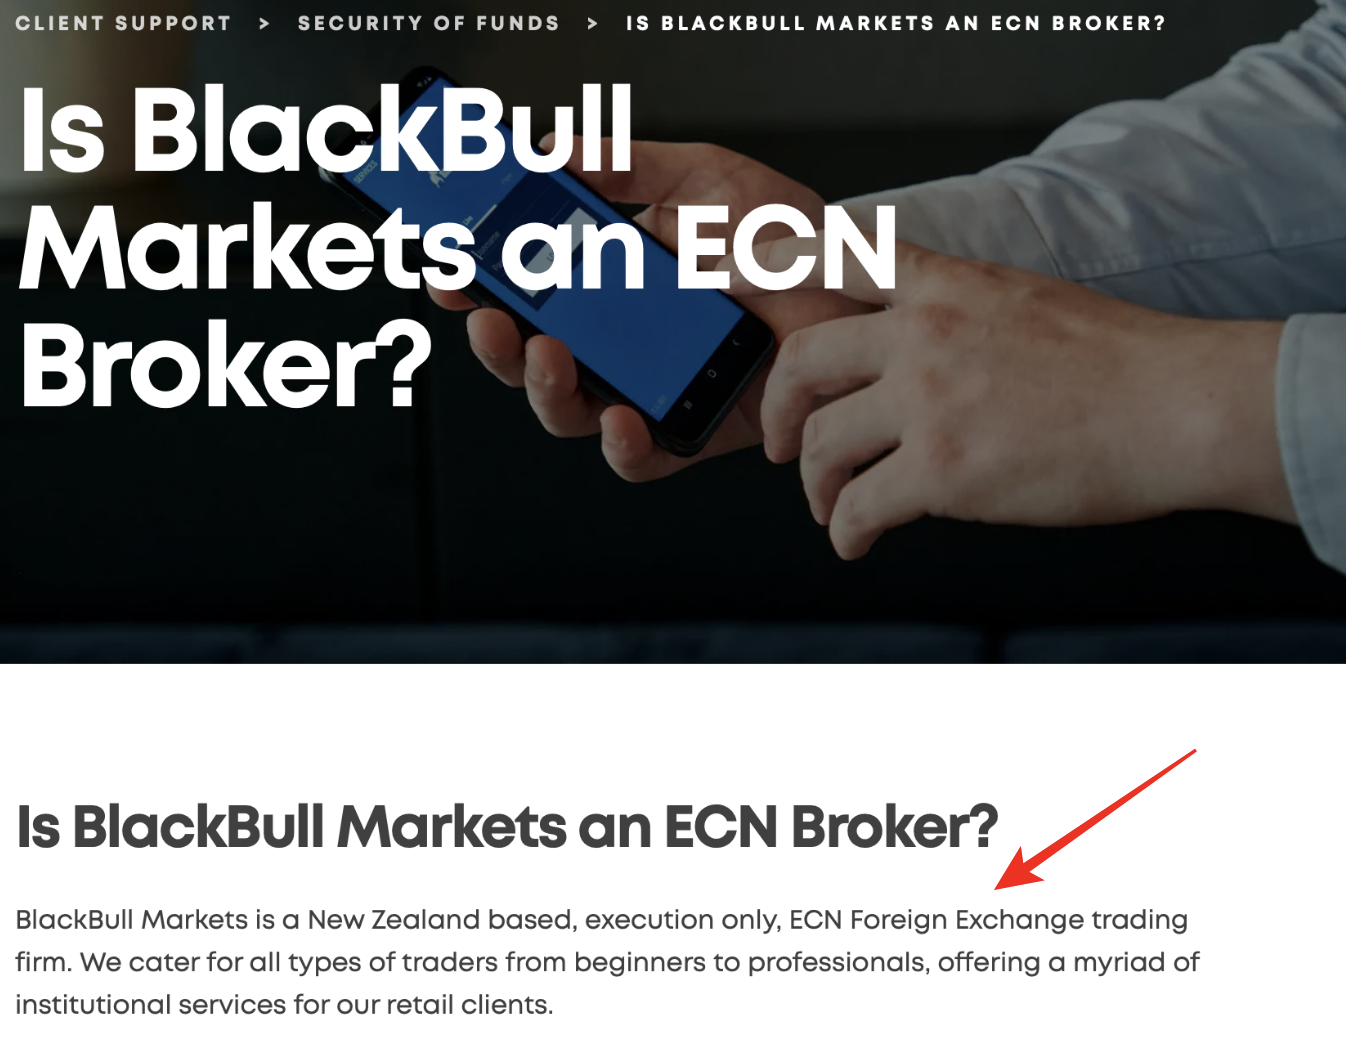 BlackBull Markets is a ECN broker